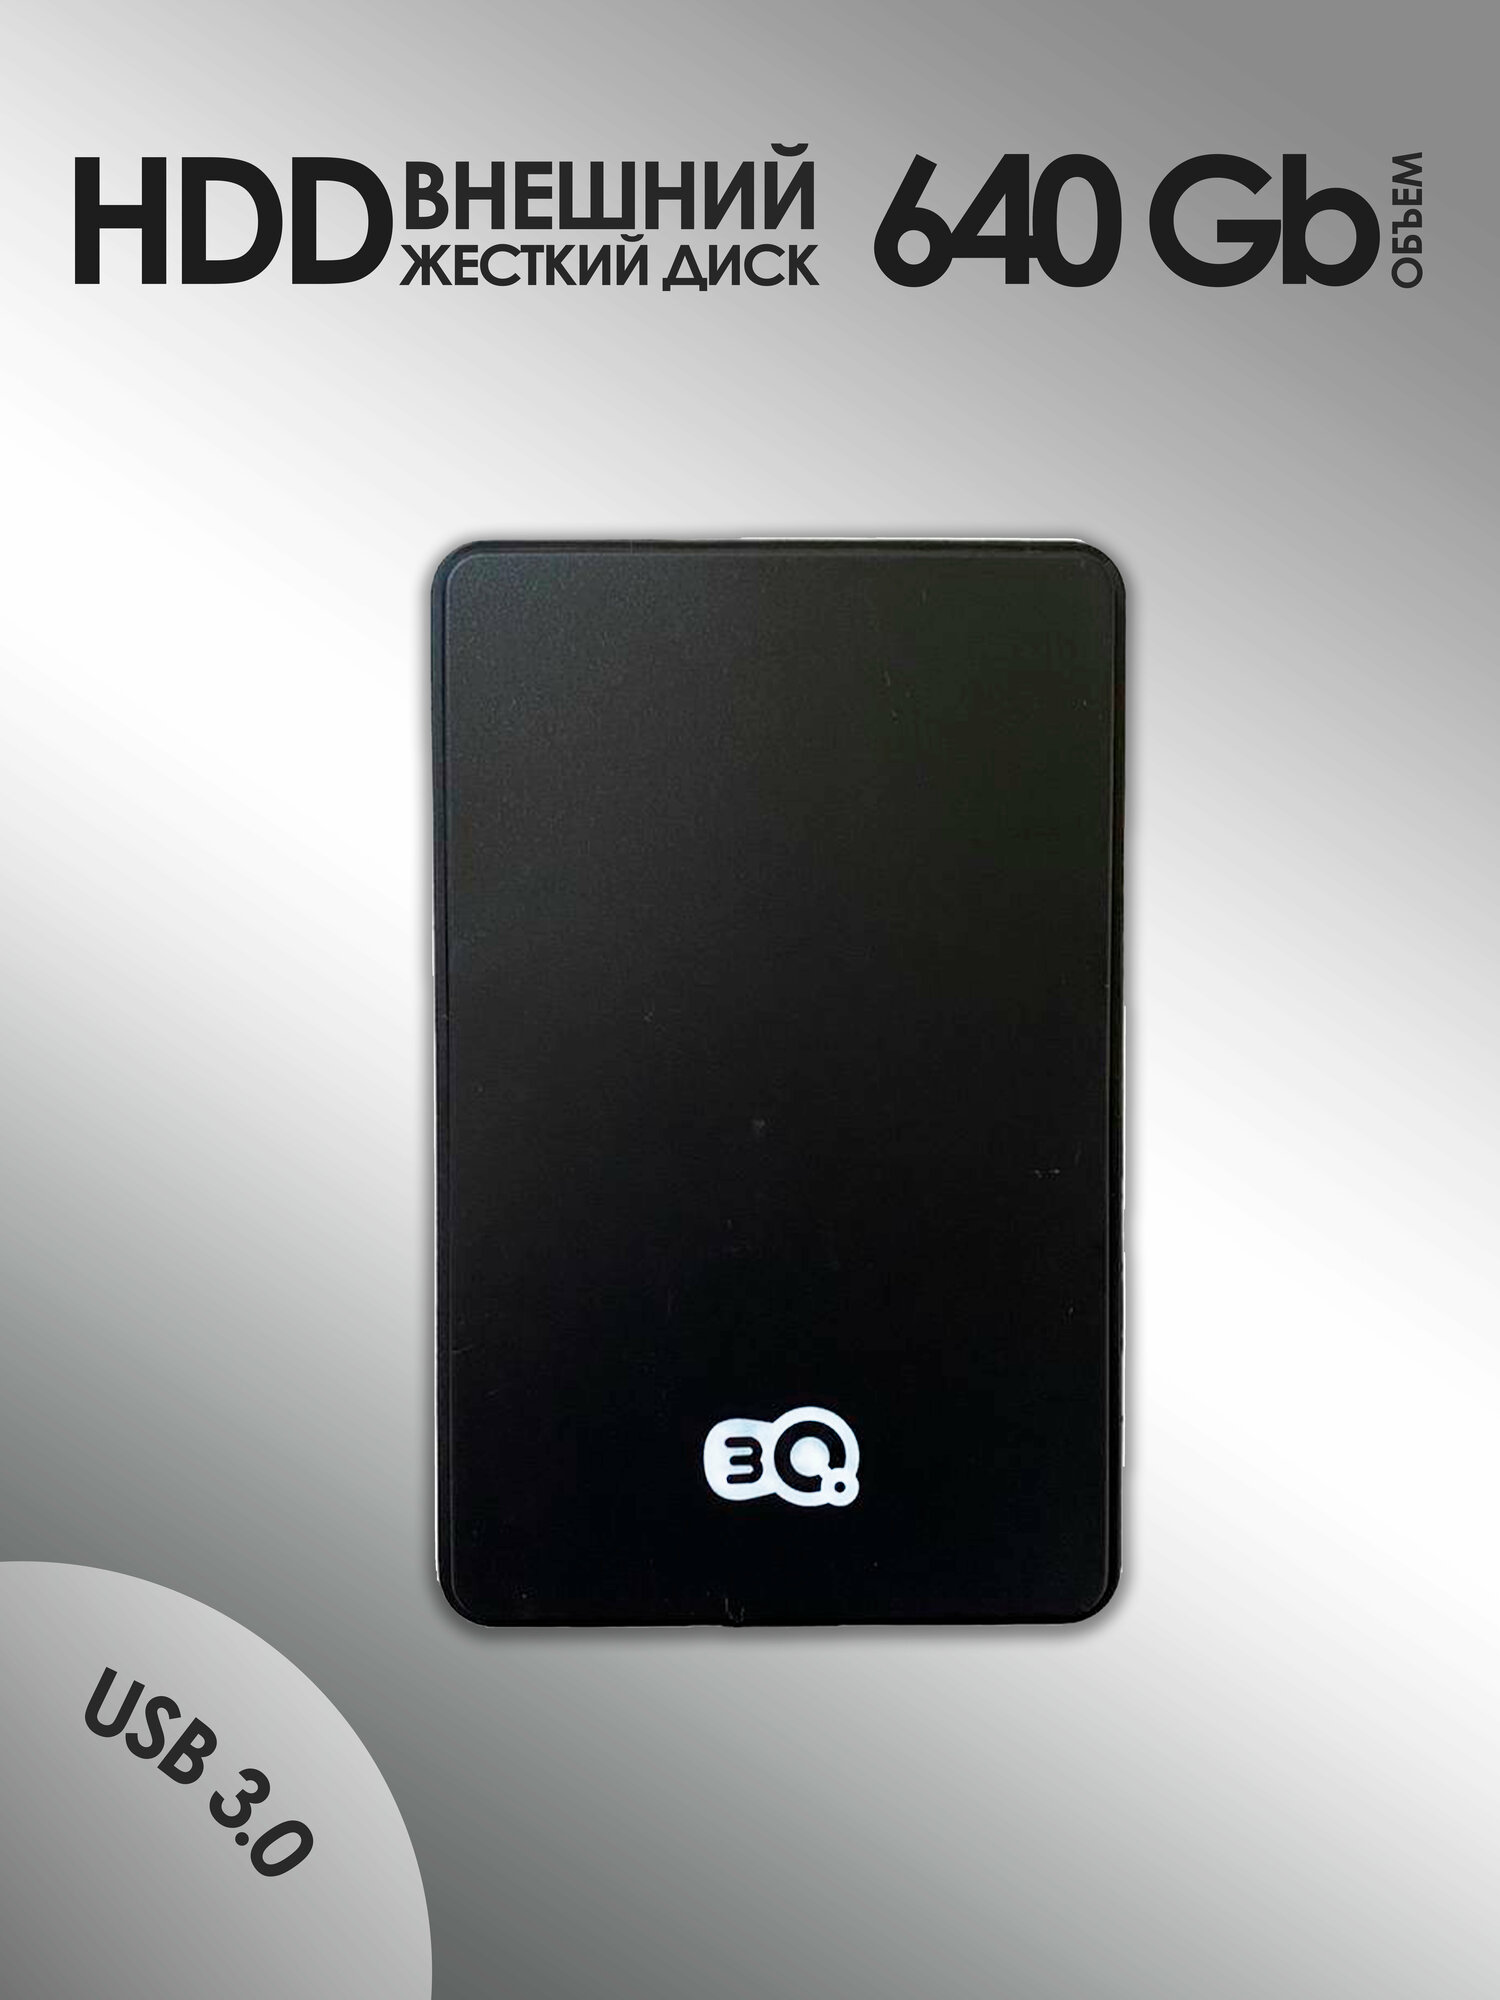 640 GB Внешний жесткий диск 3Q HDD